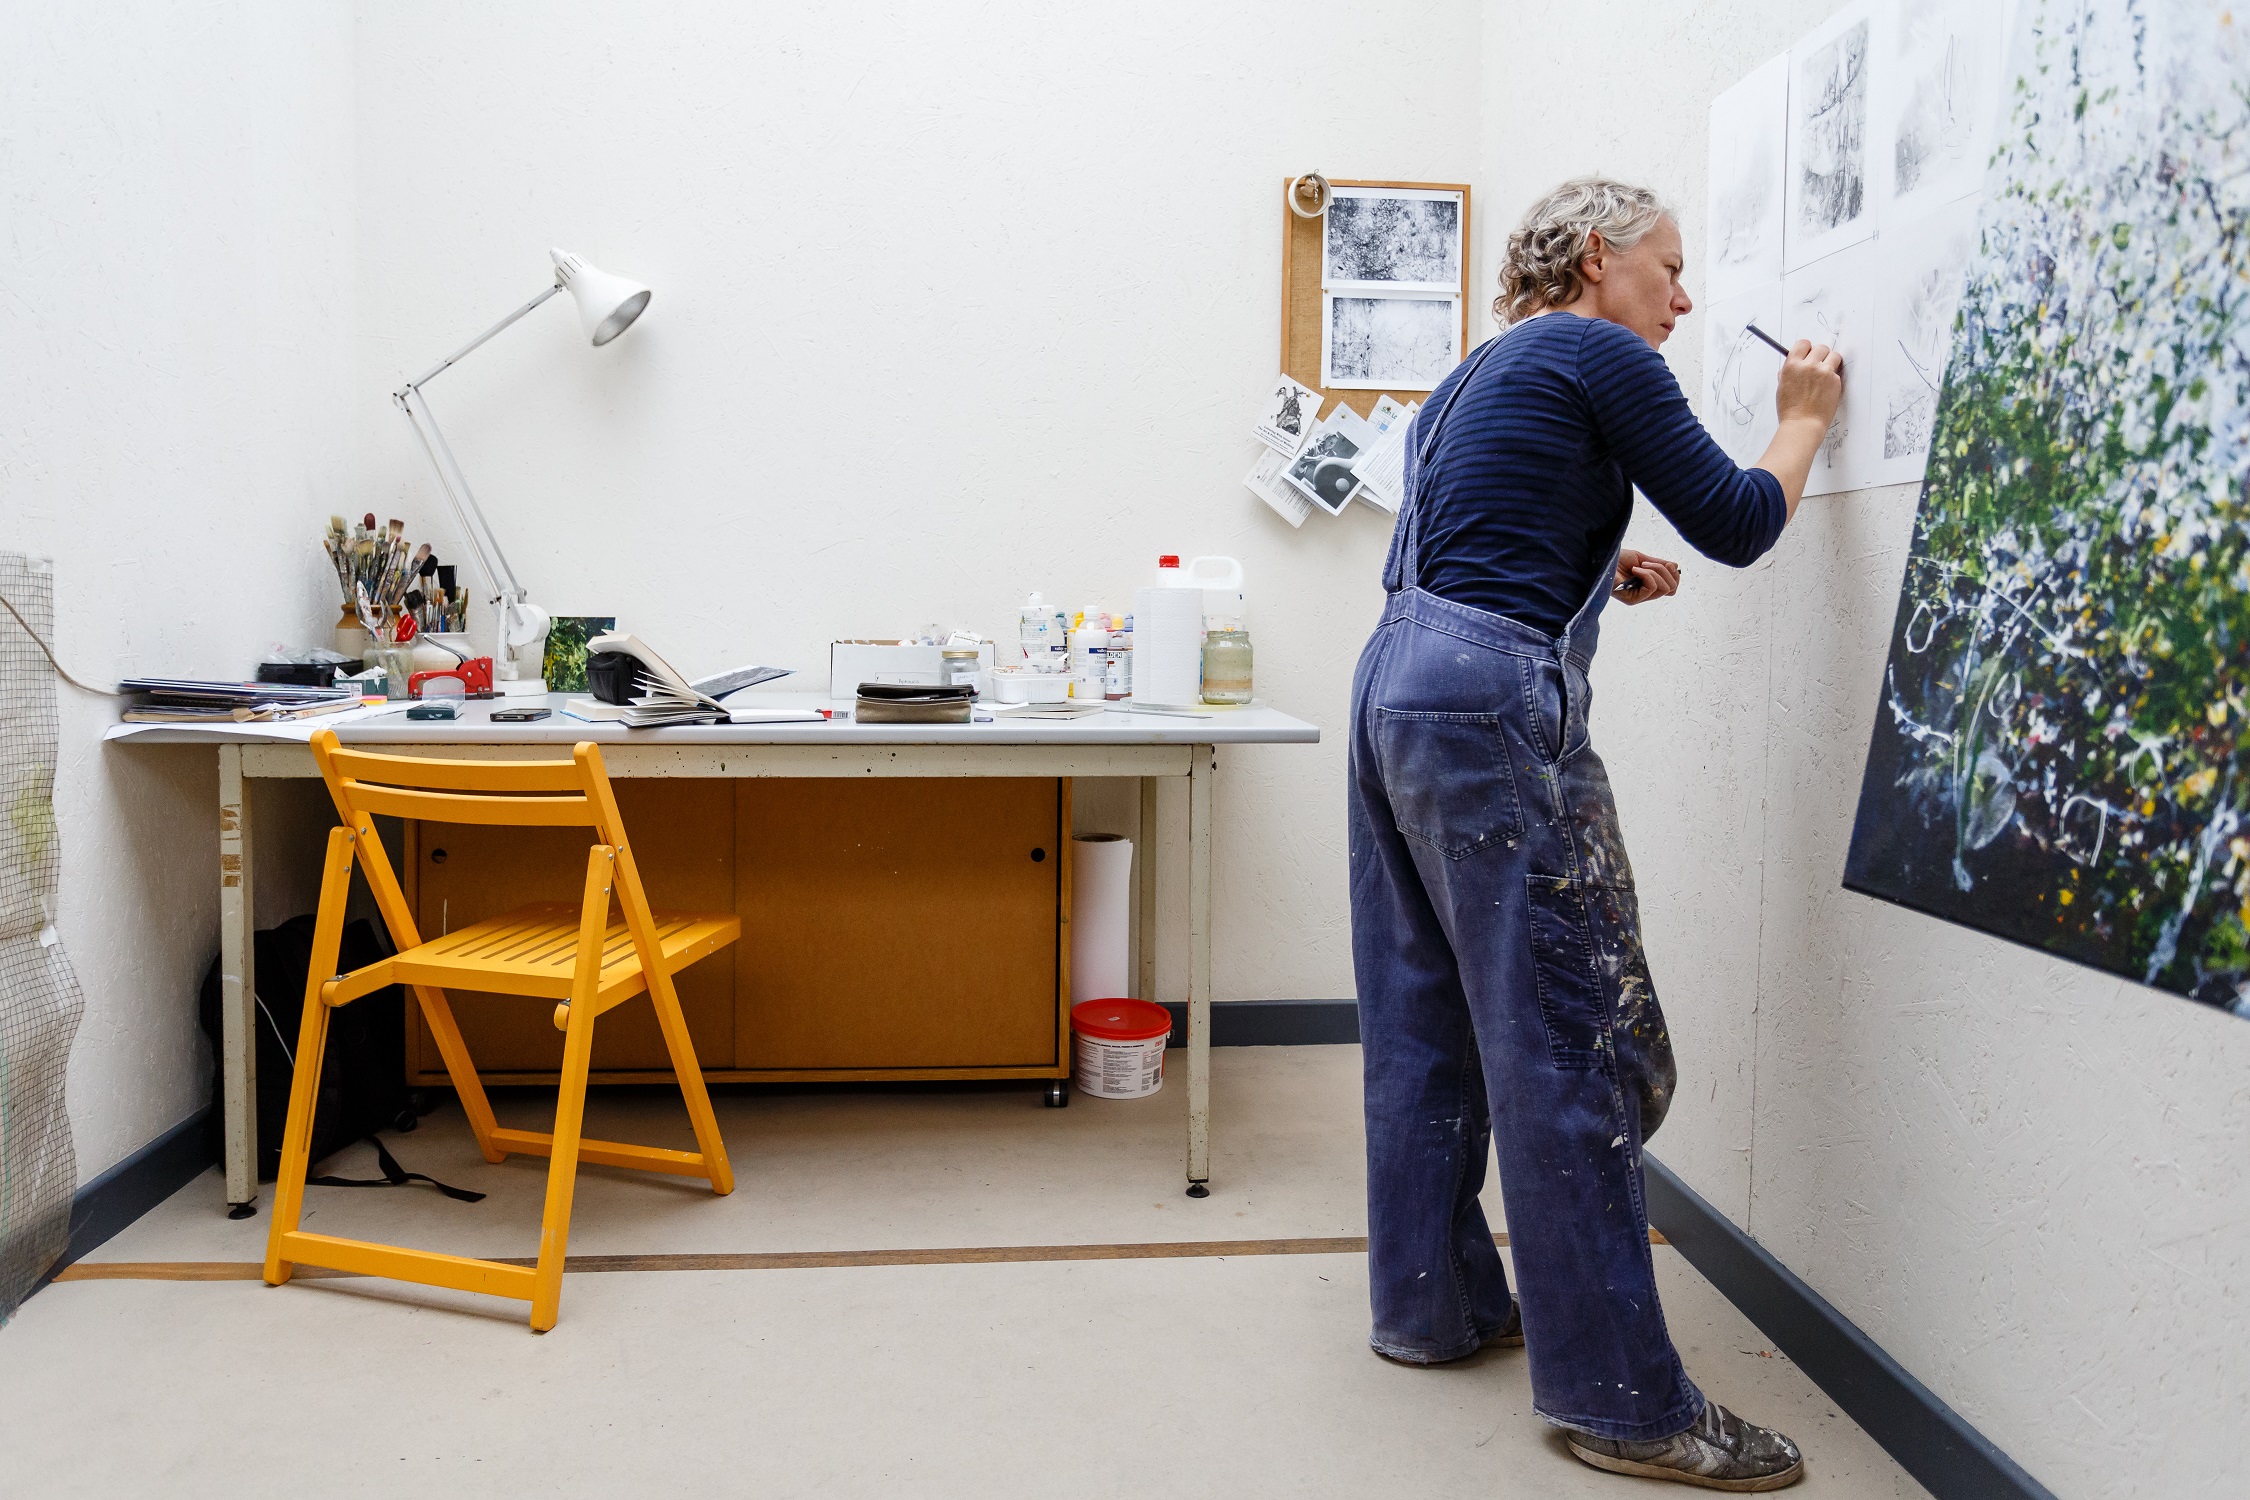 Artist Helen Thomas in her studio